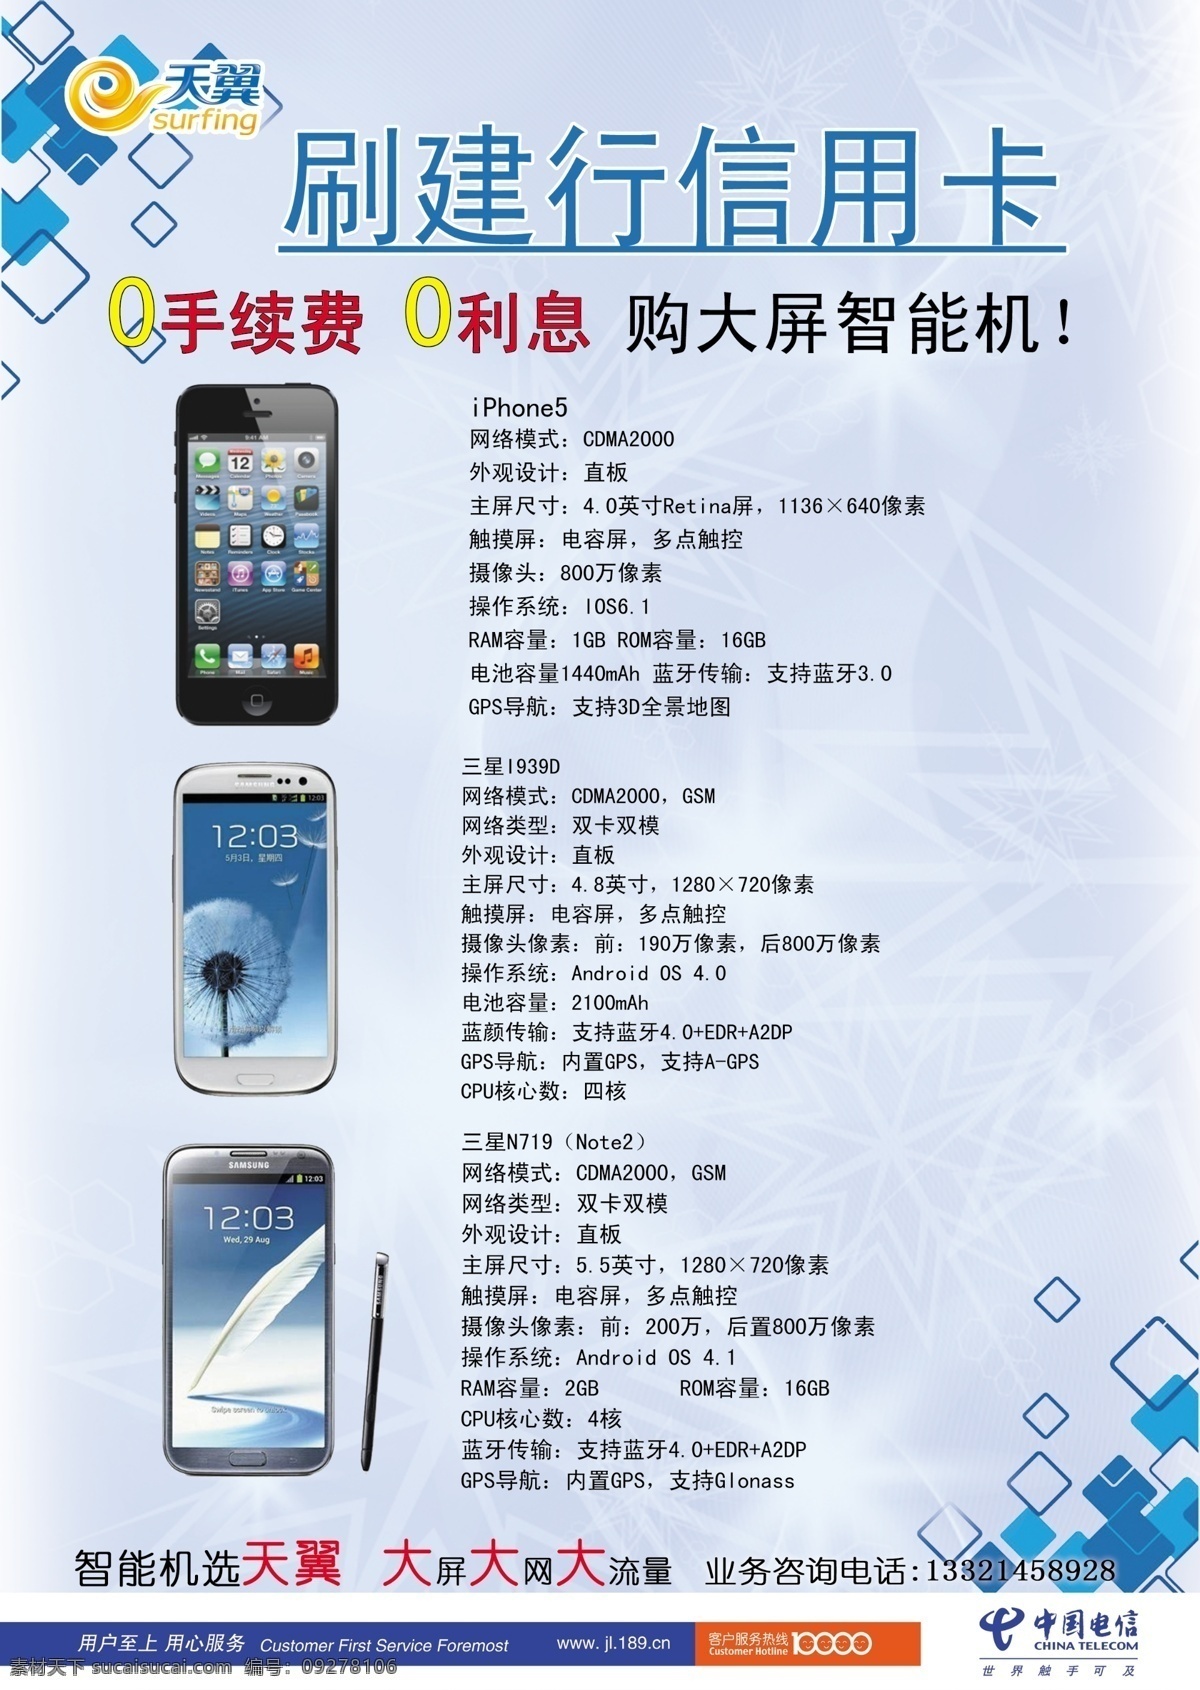 中国电信 广告设计模板 手机 天翼 宣传 宣传单 源文件 展板 宣传海报 彩页 dm